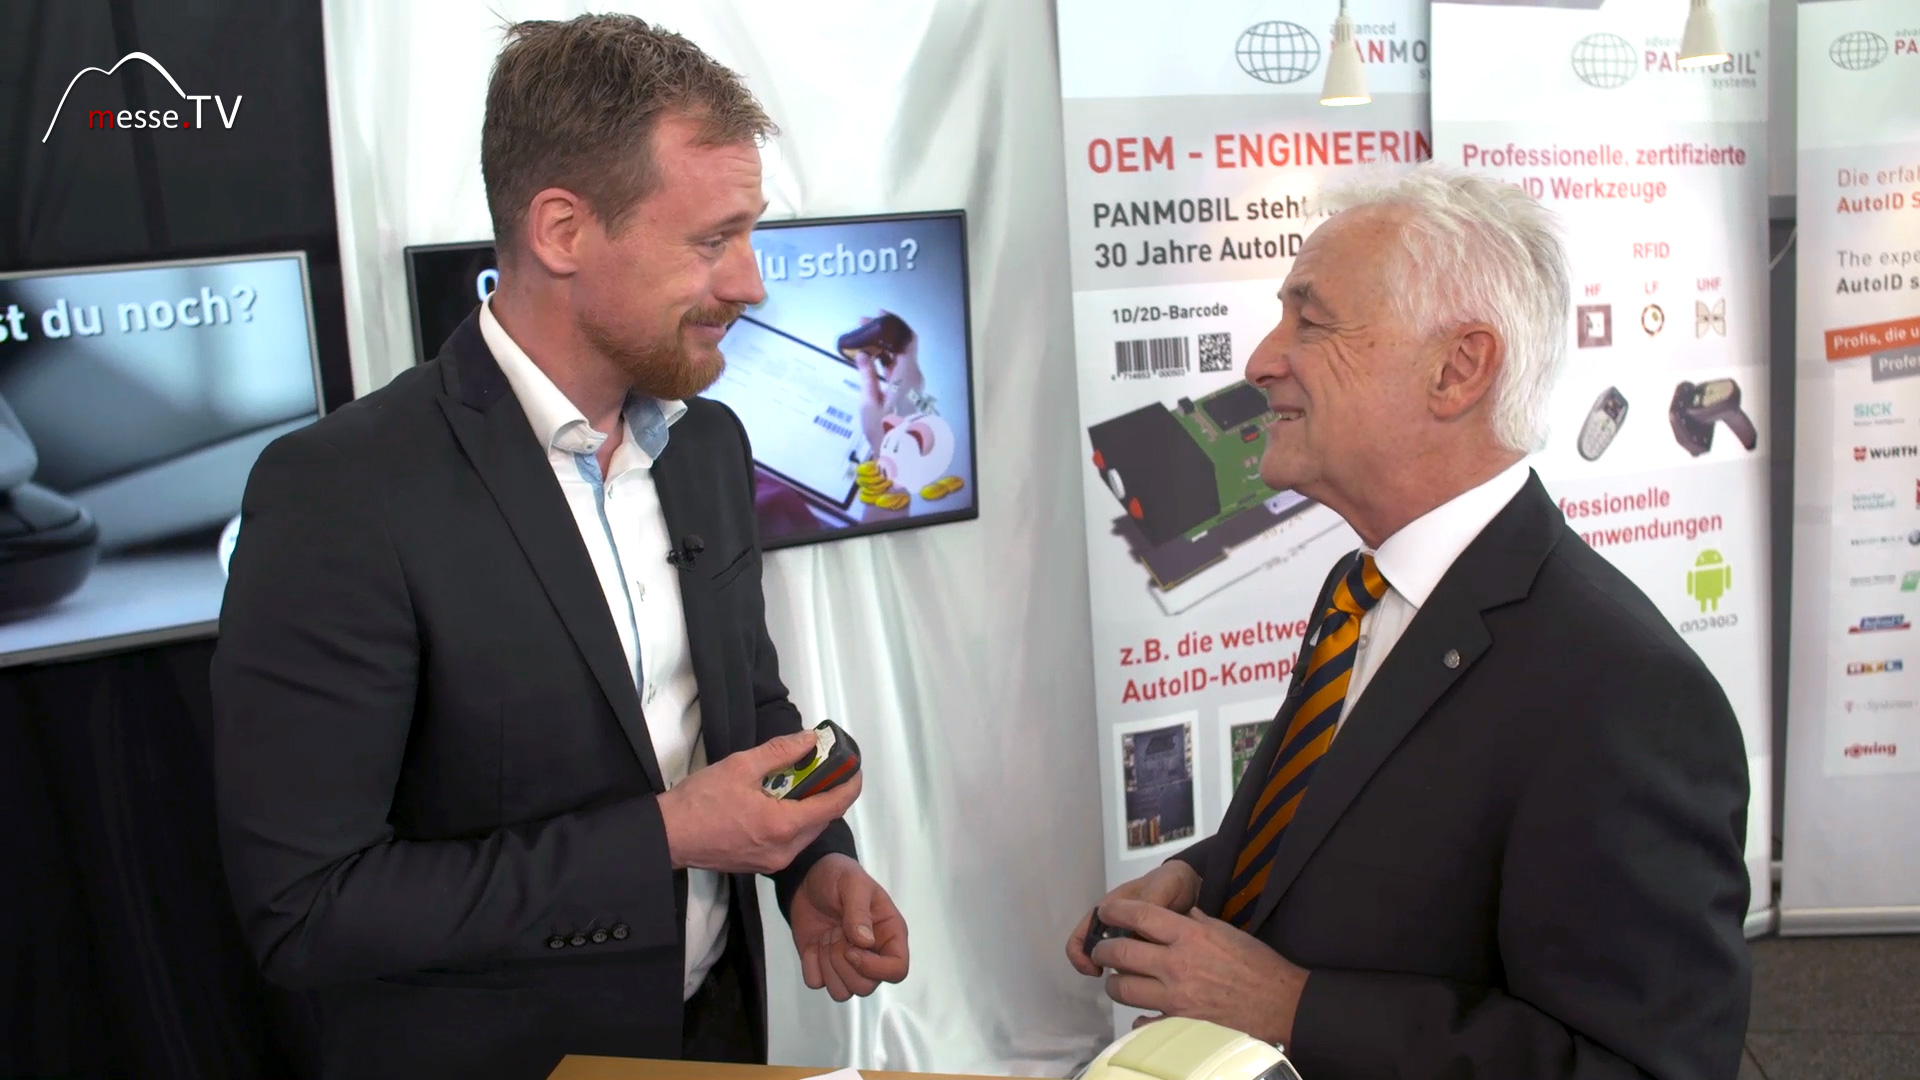 MesseTV Interview Advanced Panmobil Geschaeftsfuehrer Peter Schmidt LogiMAT 2016 Stuttgart